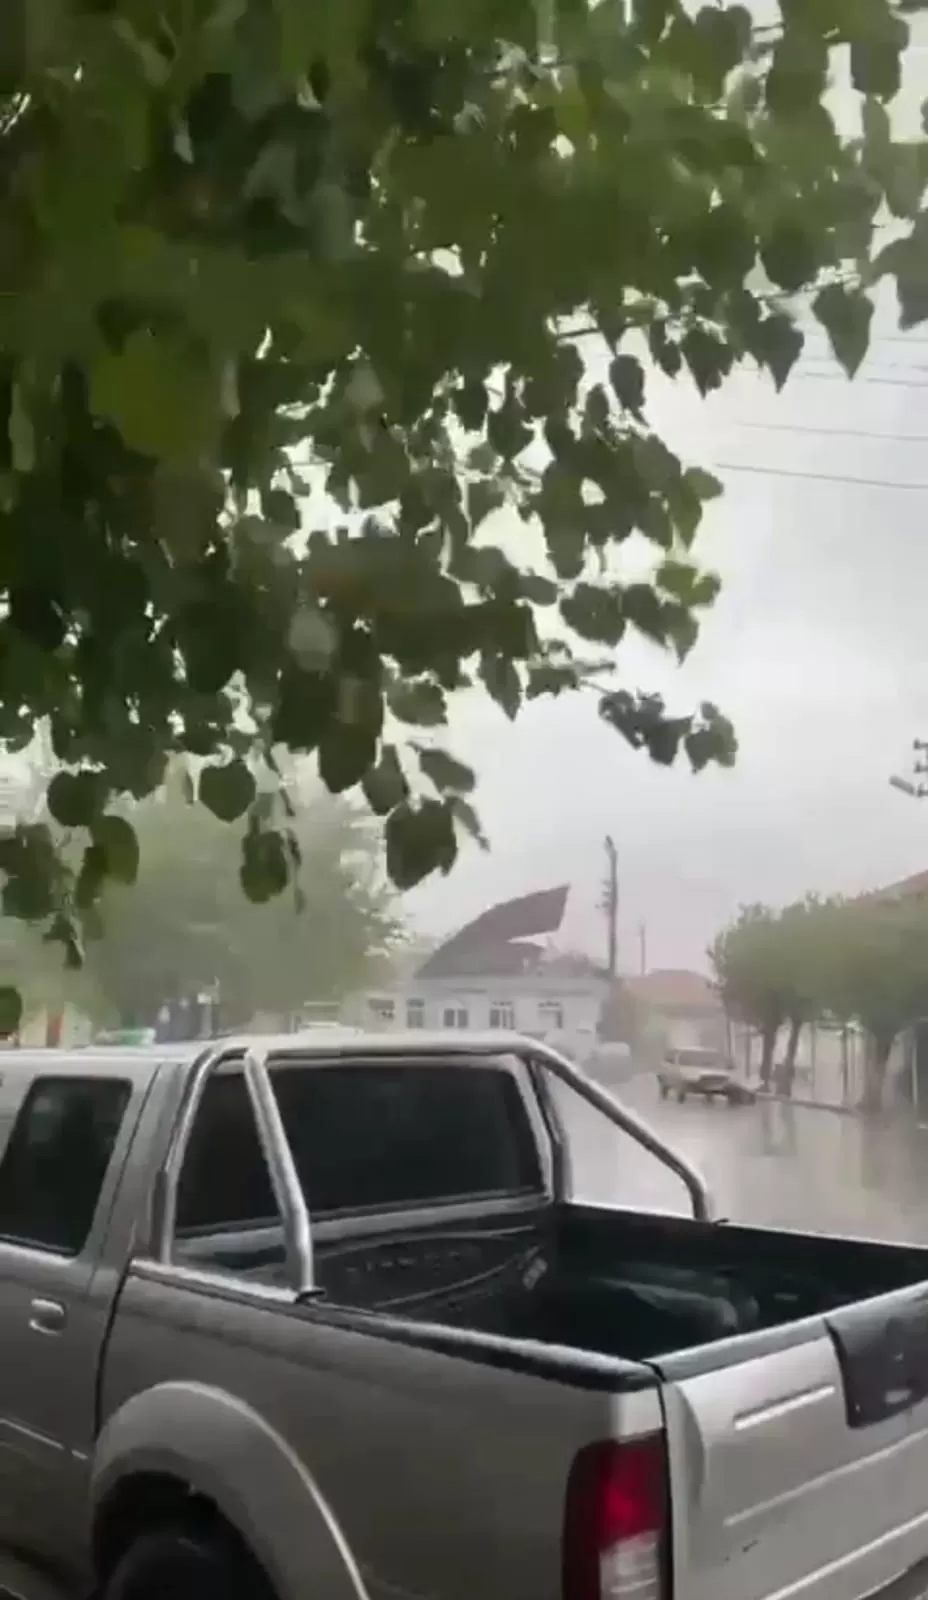 İzmir'in Bergama ilçesinde etkili olan sağanak yağış ve fırtına nedeniyle bir binanın çatısı uçtu. O anlar bir vatandaş tarafından cep telefonu kamerasıyla kayda alındı.